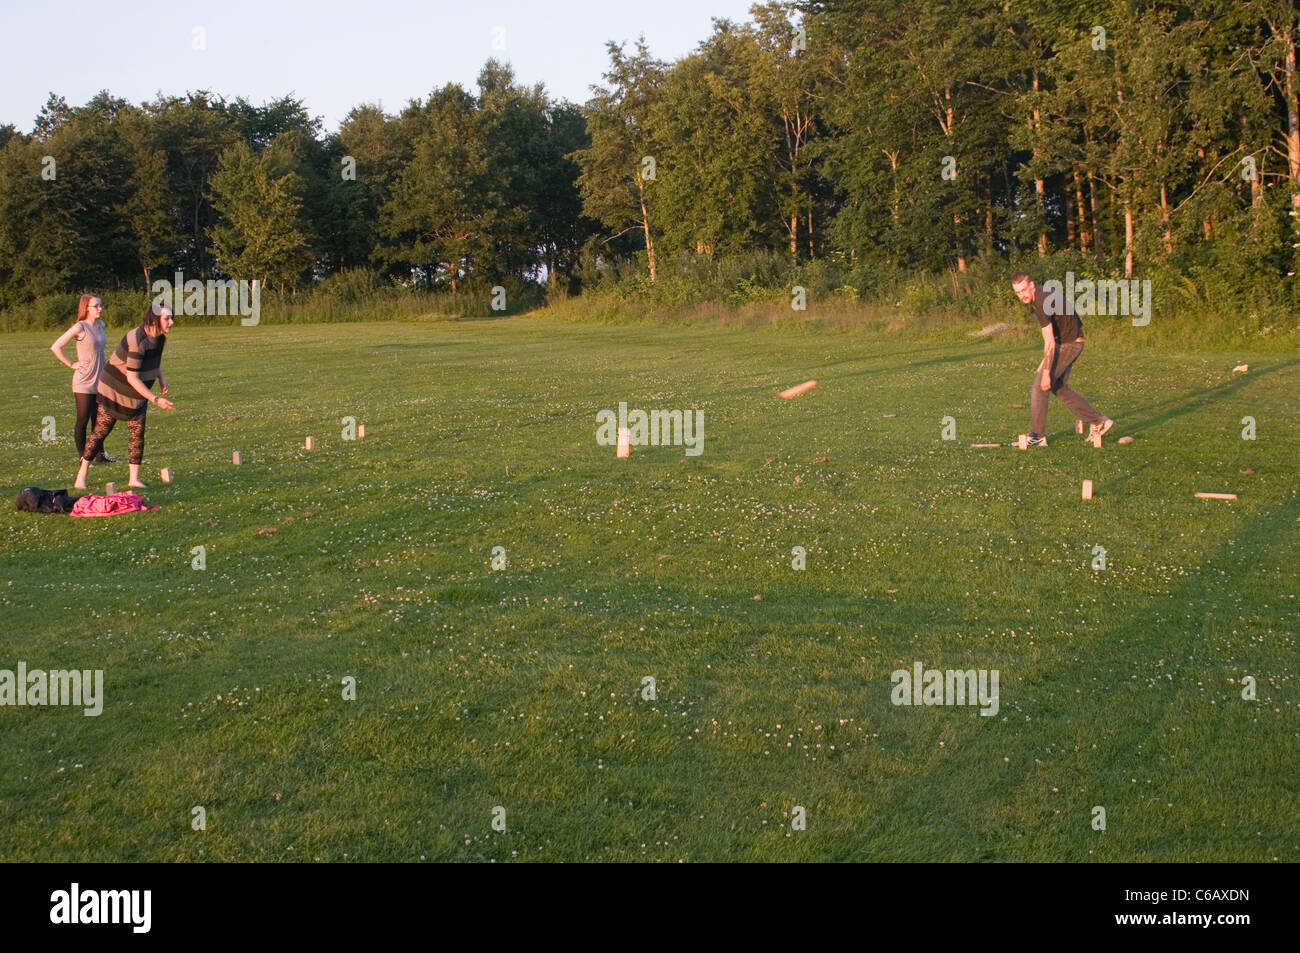 Kubb Schweden Schwedische Spiel Spiele traditionelle Menschen spielen Spieler im freien Bowling Hufeisen Fertigkeit Taktik taktischer qualifizierte Stockfoto